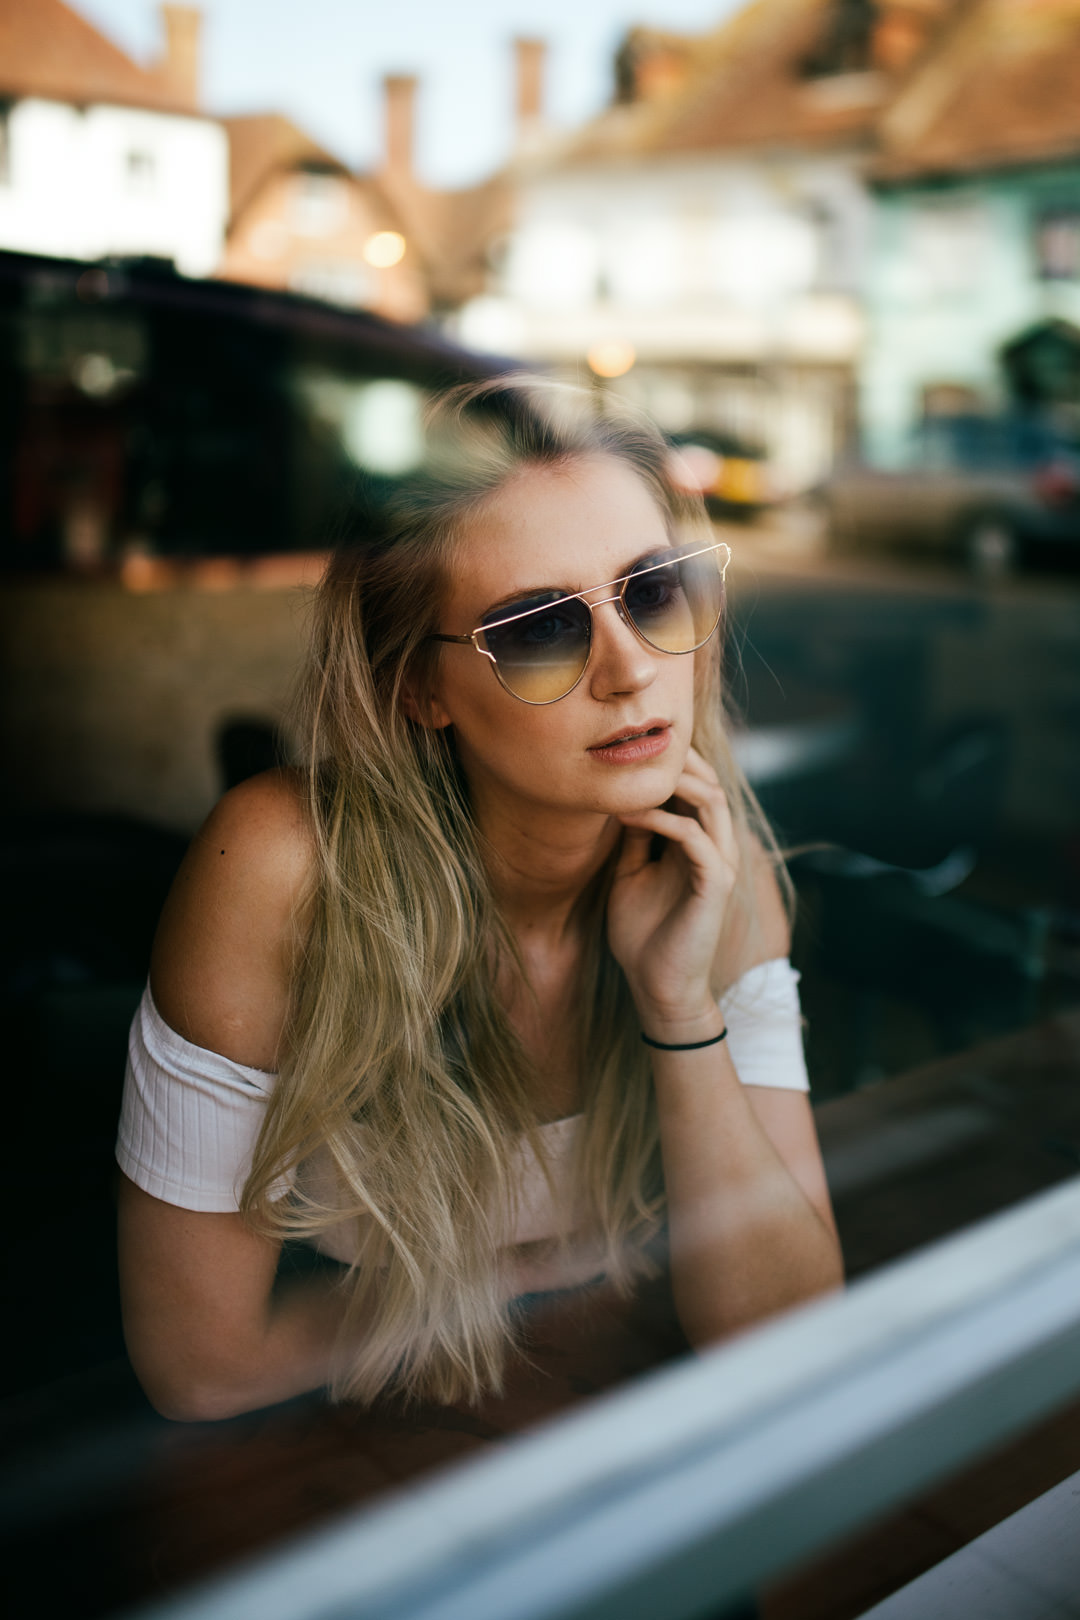 girl waring blue sunglasses sat inside coffee shop window